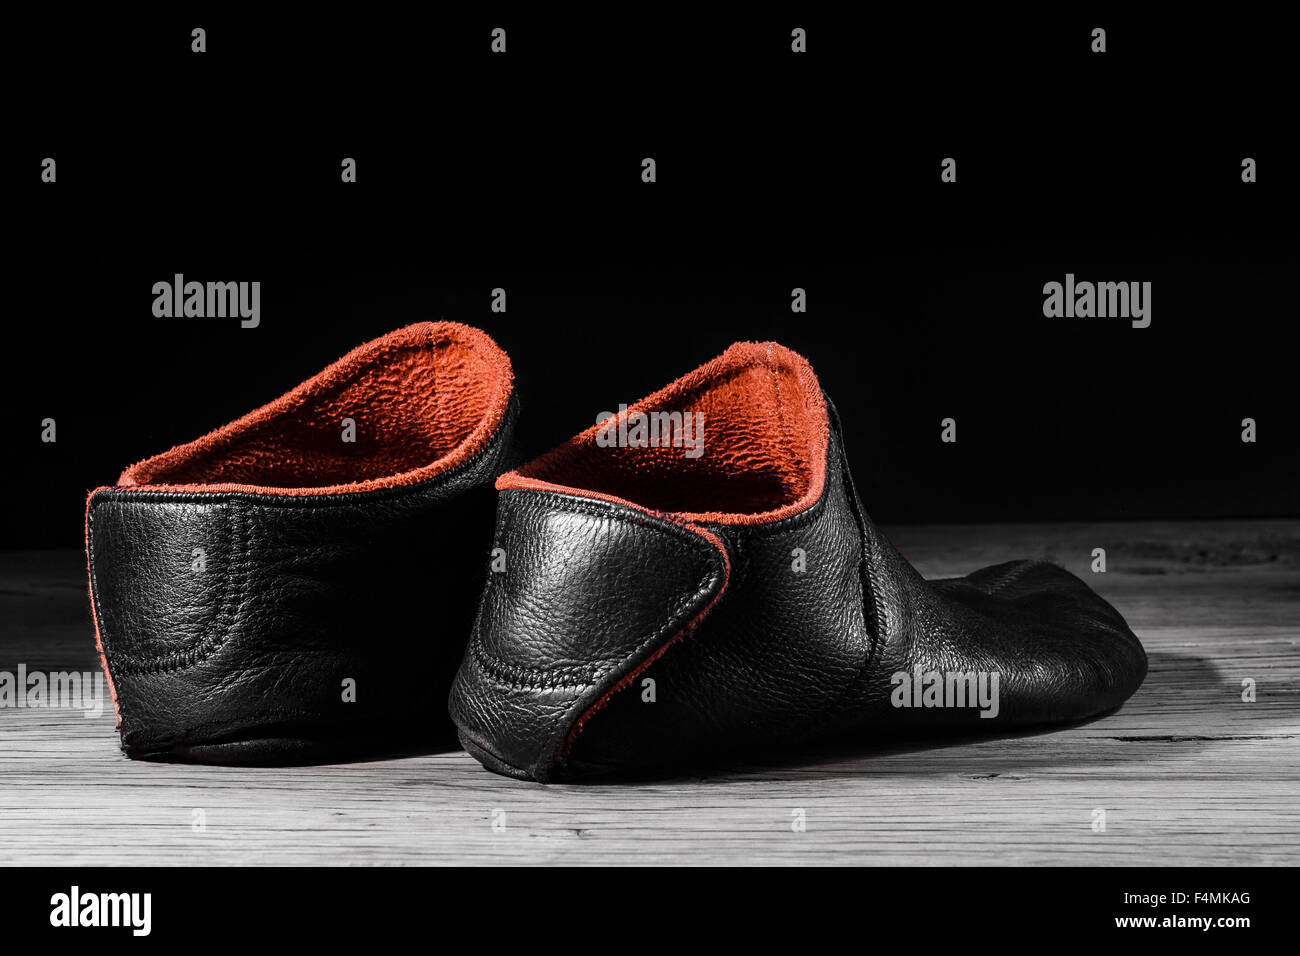 Leere Pantoffel Schuh-Design zu Hause kreativ Licht. Konzept zu entspannen, am Wochenende, ruhen. Auf schwarzem Hintergrund. Stockfoto